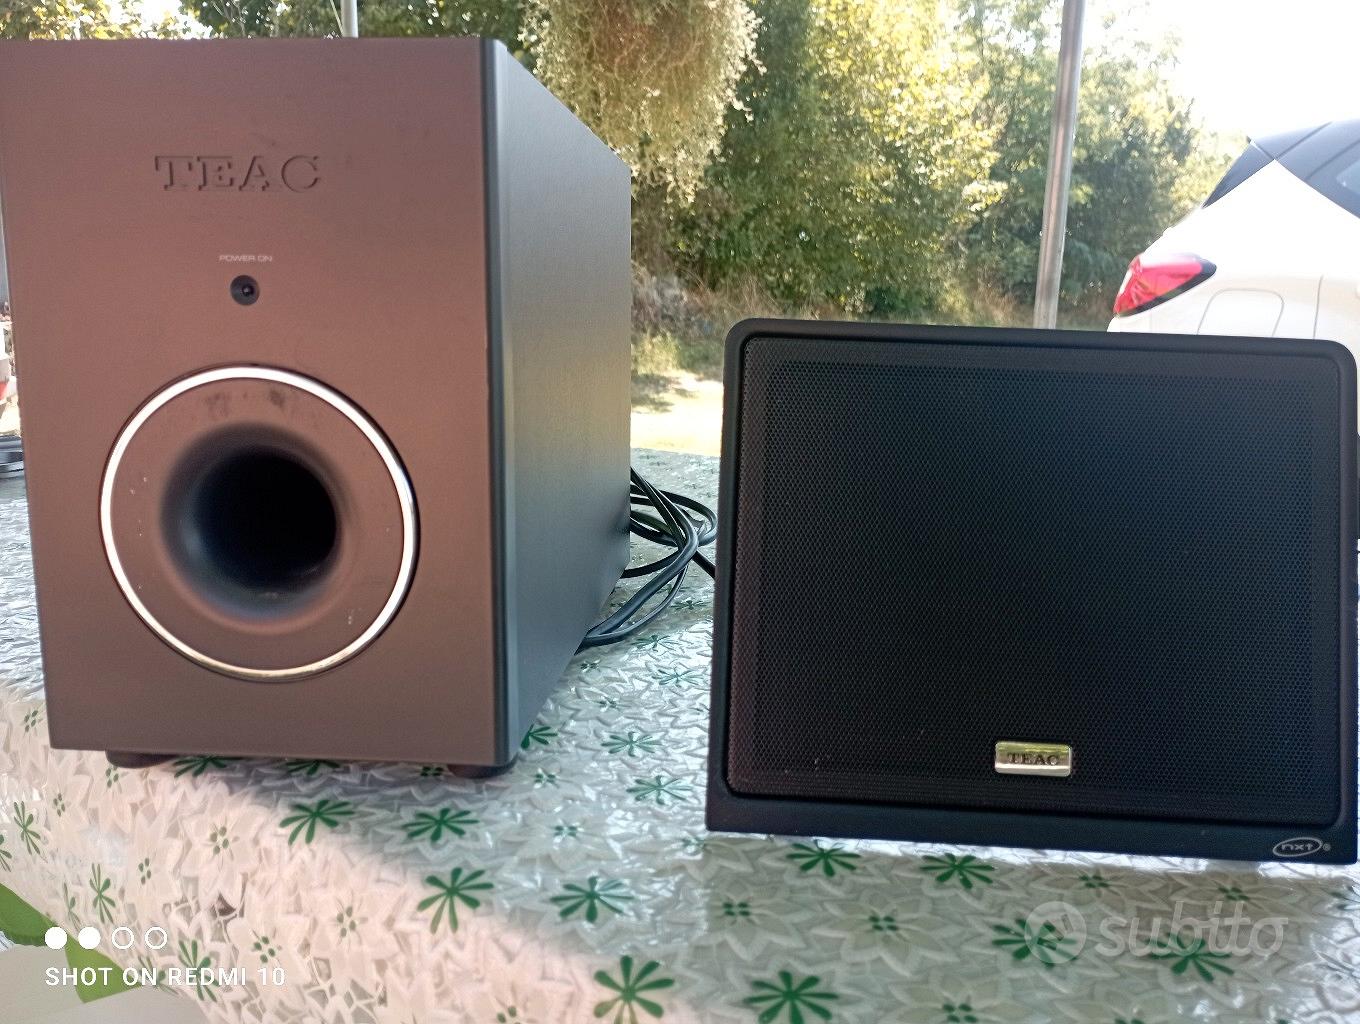 impianto stereo della Teac - Audio/Video In vendita a Frosinone